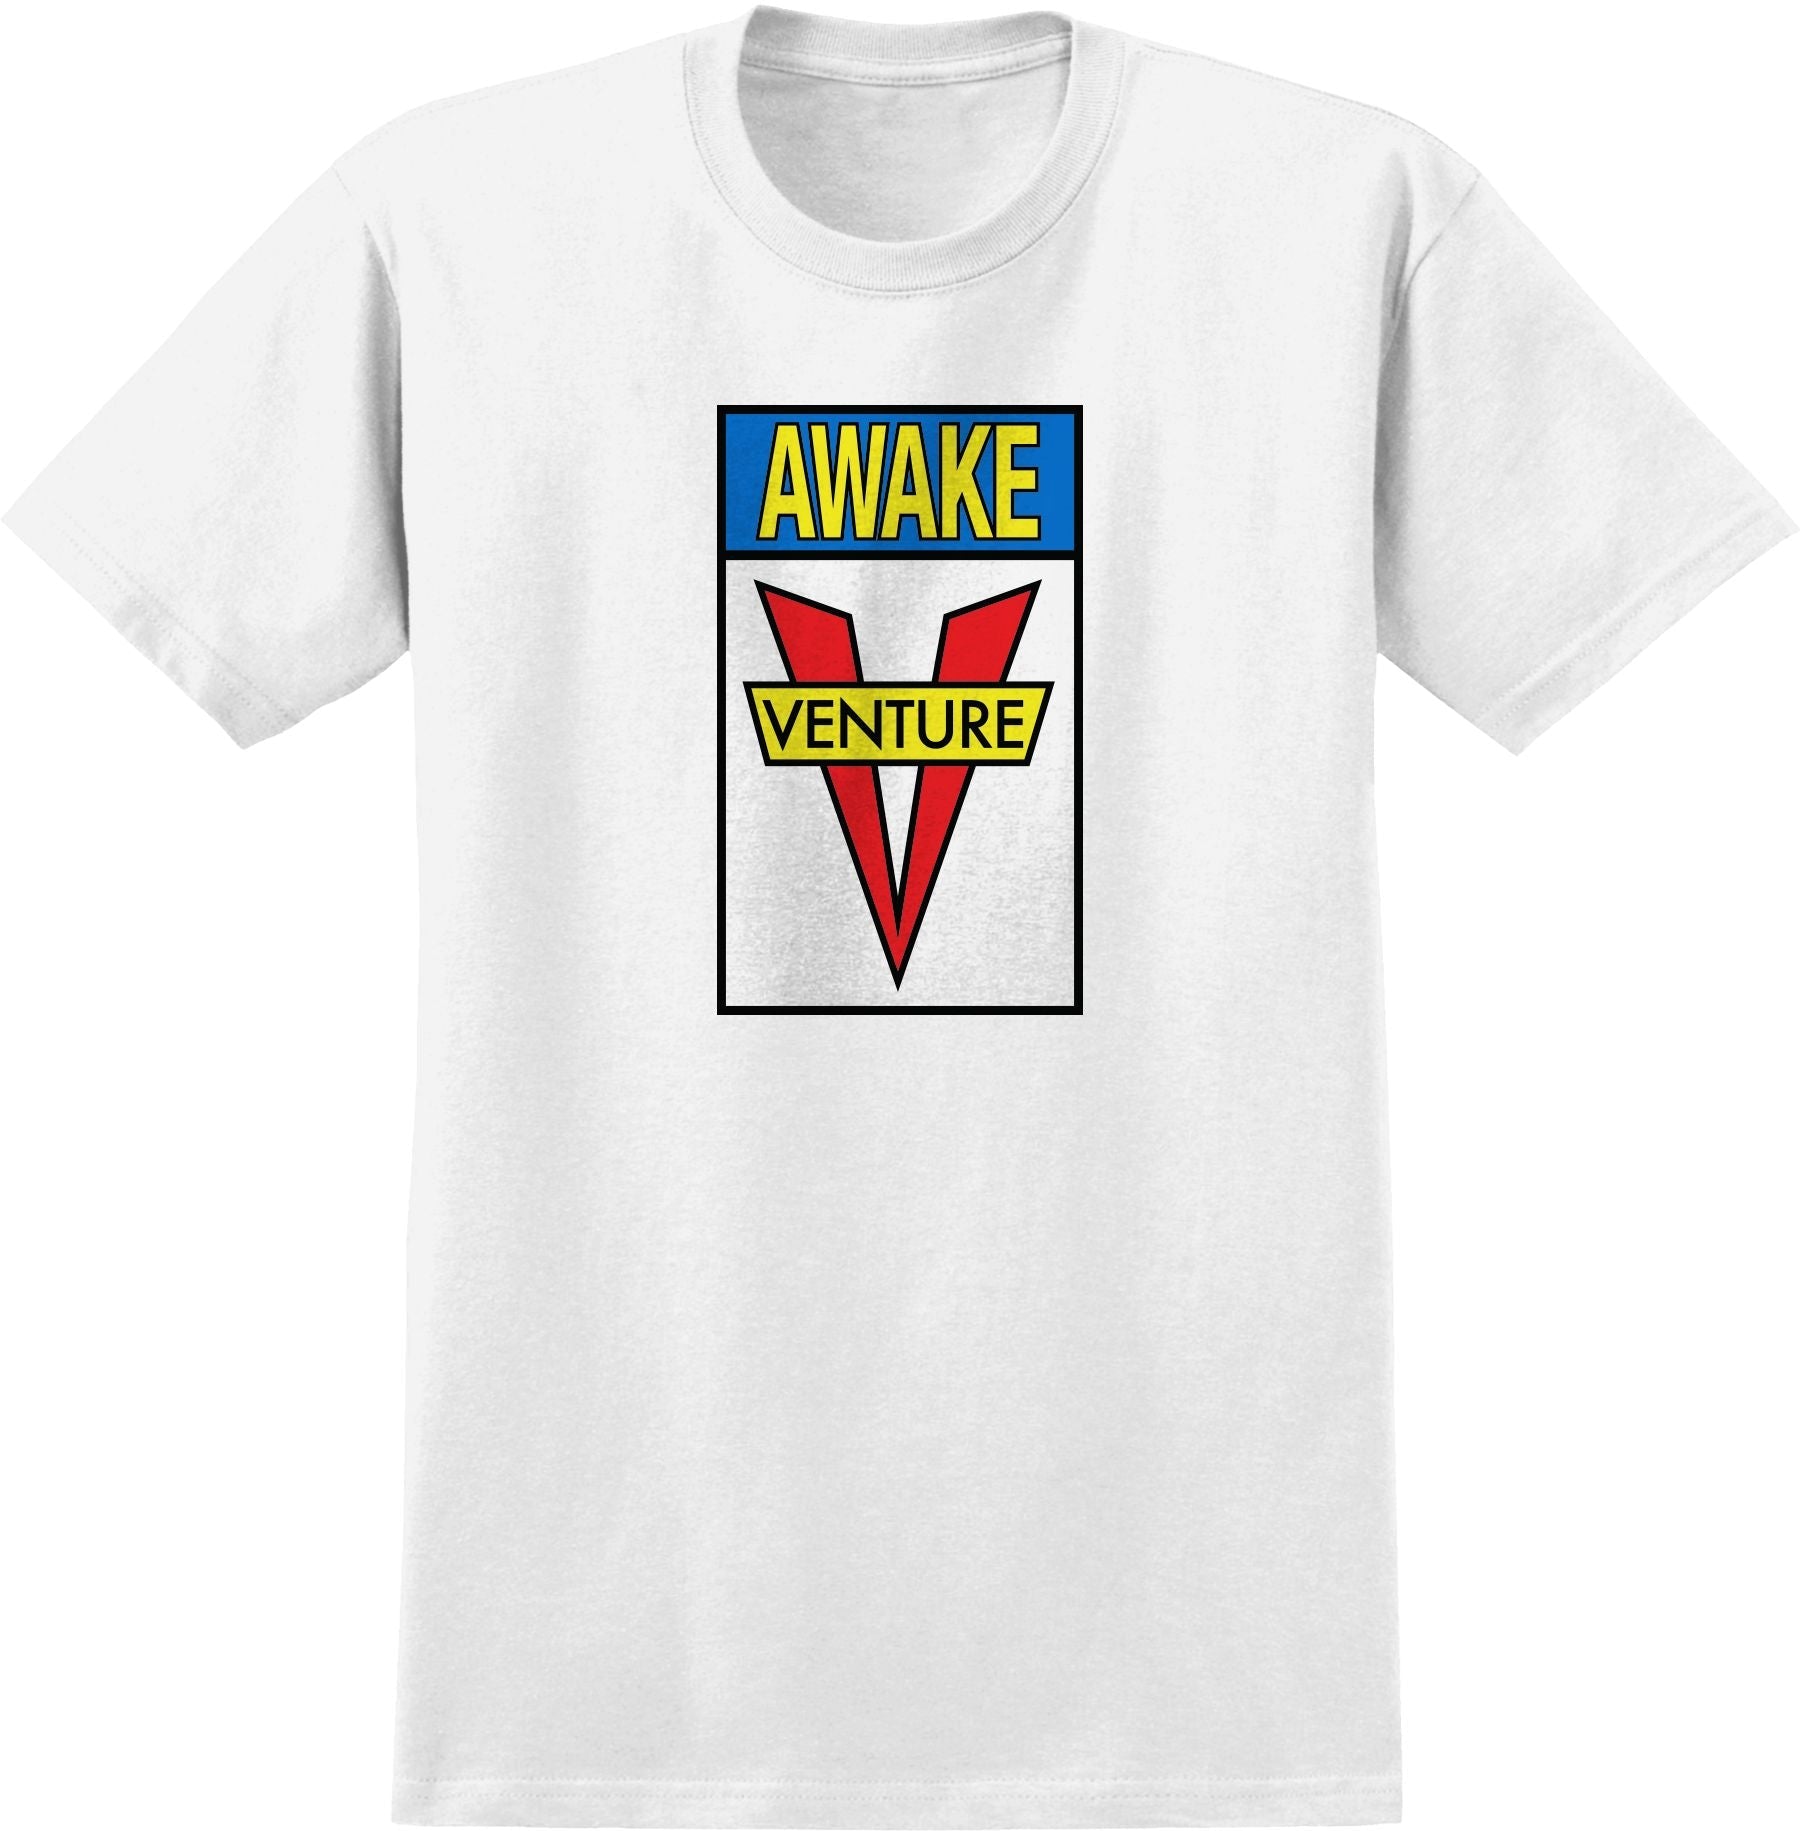 VENTURE AWAKE T-SHIRT WHITE/MULTI - The Drive Skateshop